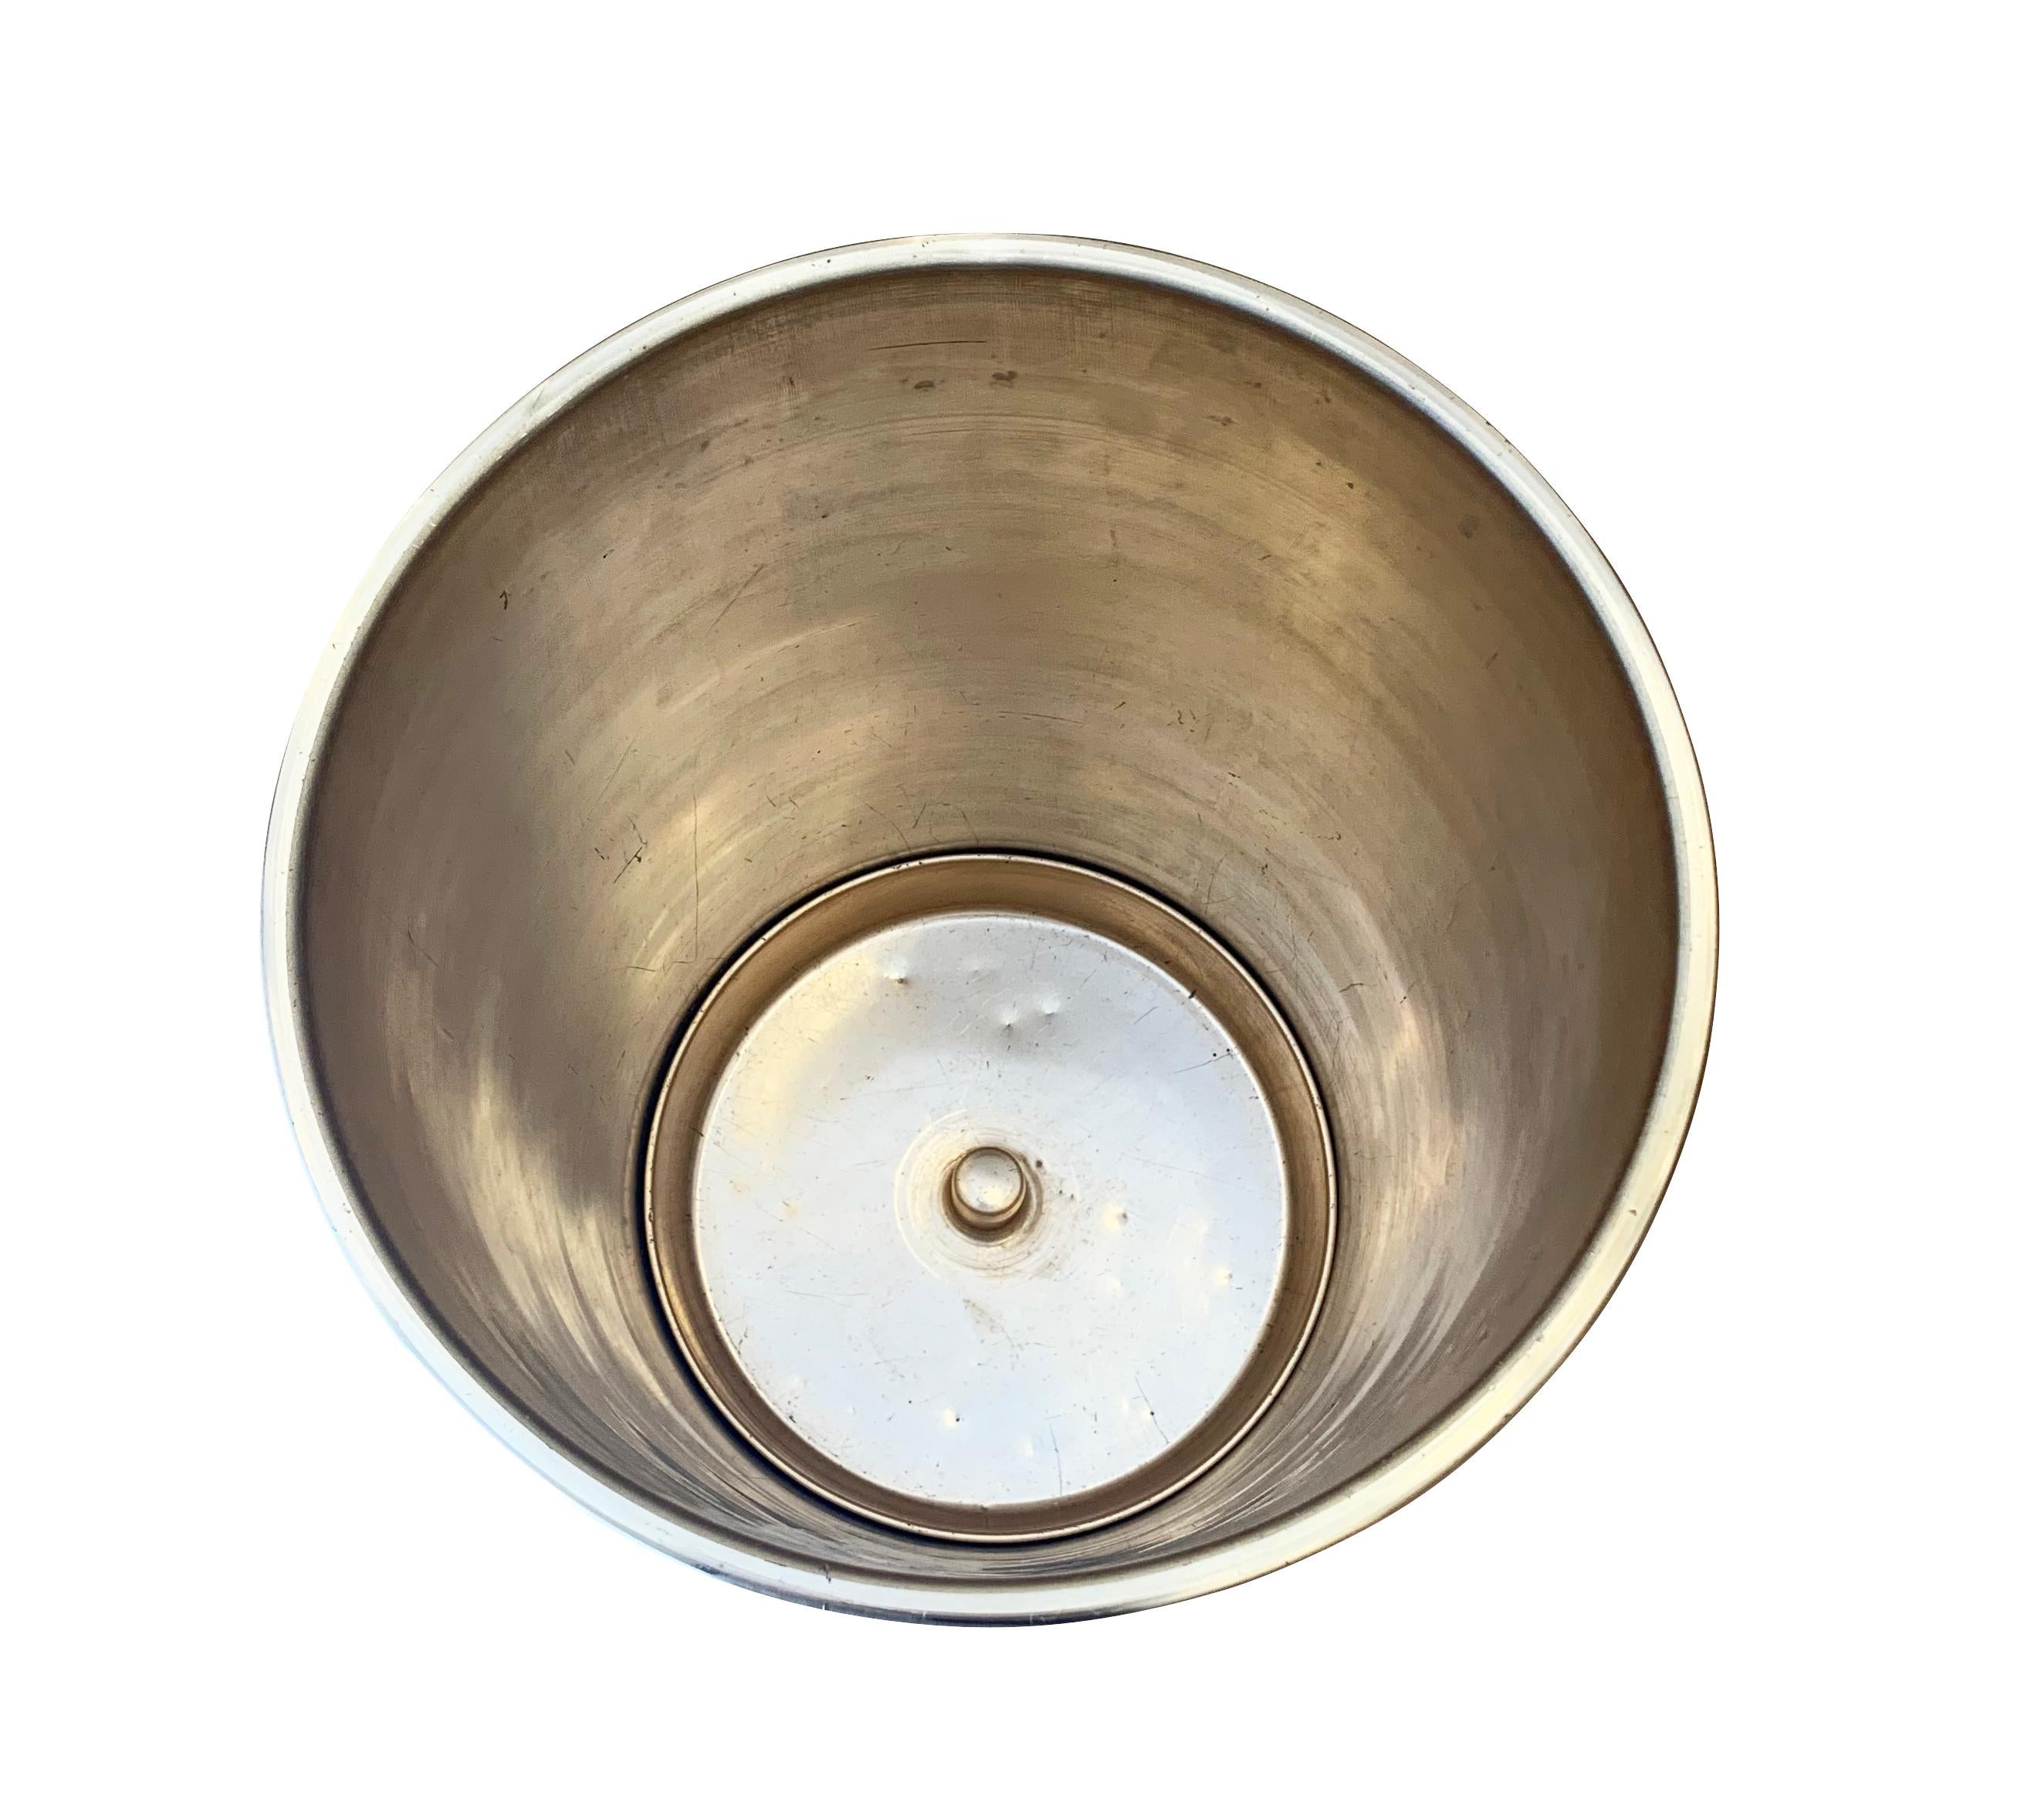 Schirmständer von Ettore Sottsass aus dem Jahr 1955 für Rinnovel. Das Innere besteht aus gebürstetem Aluminium, das durch kreisförmige Aussparungen unterschiedlicher Größe sichtbar ist. Markiert.

Zustand: Guter Vintage-Zustand, geringfügige